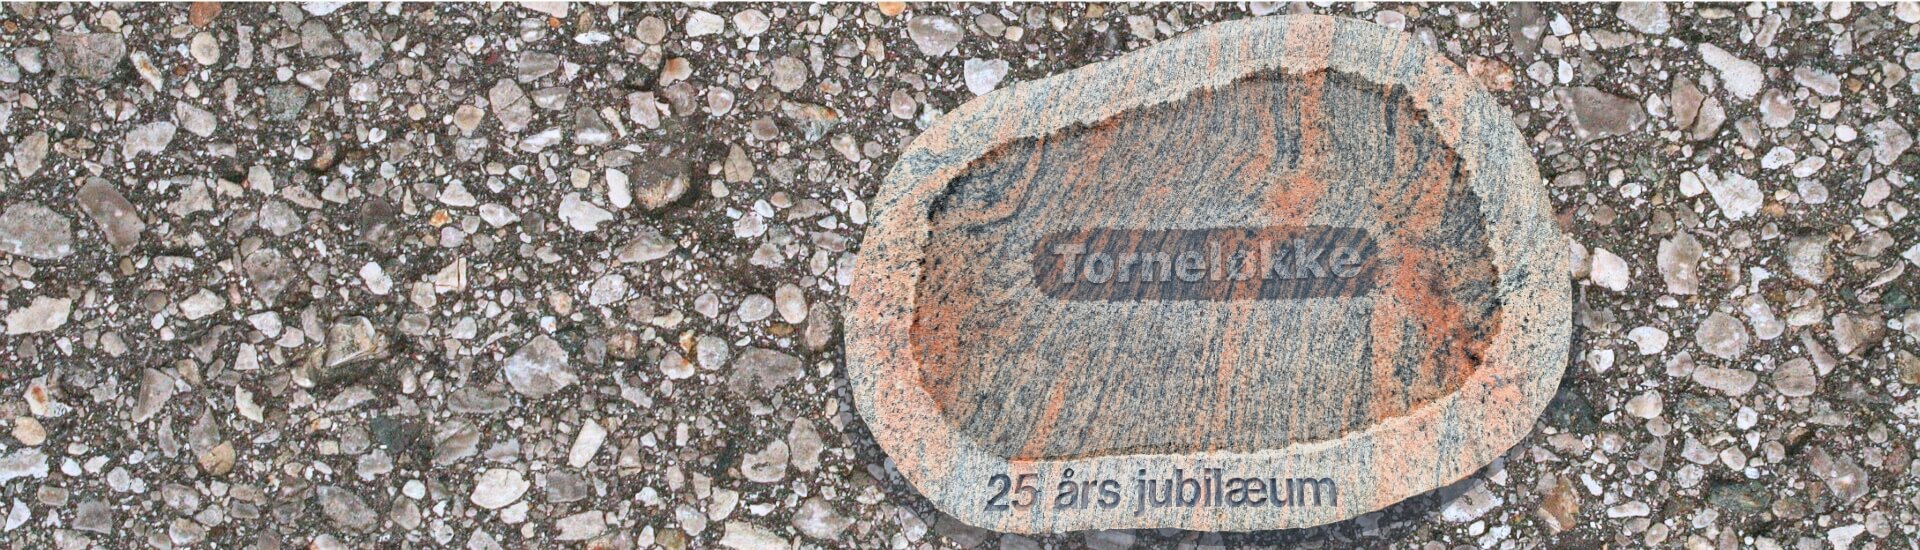 Gaard- og logosten for Torneloekke - jubilaeums sten